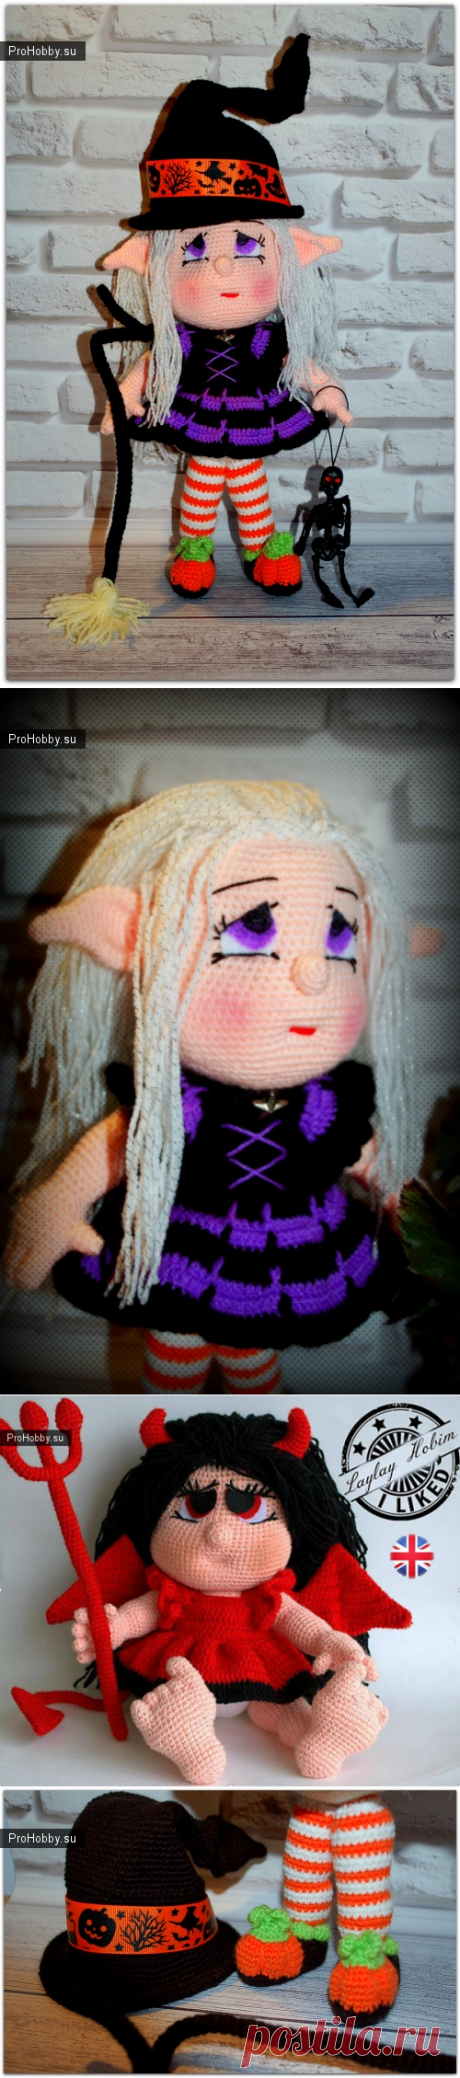 Девочка-эльф в костюме ведьмочки / Вязание игрушек / ProHobby.su | Вязание игрушек спицами и крючком для начинающих, мастер классы, схемы вязания